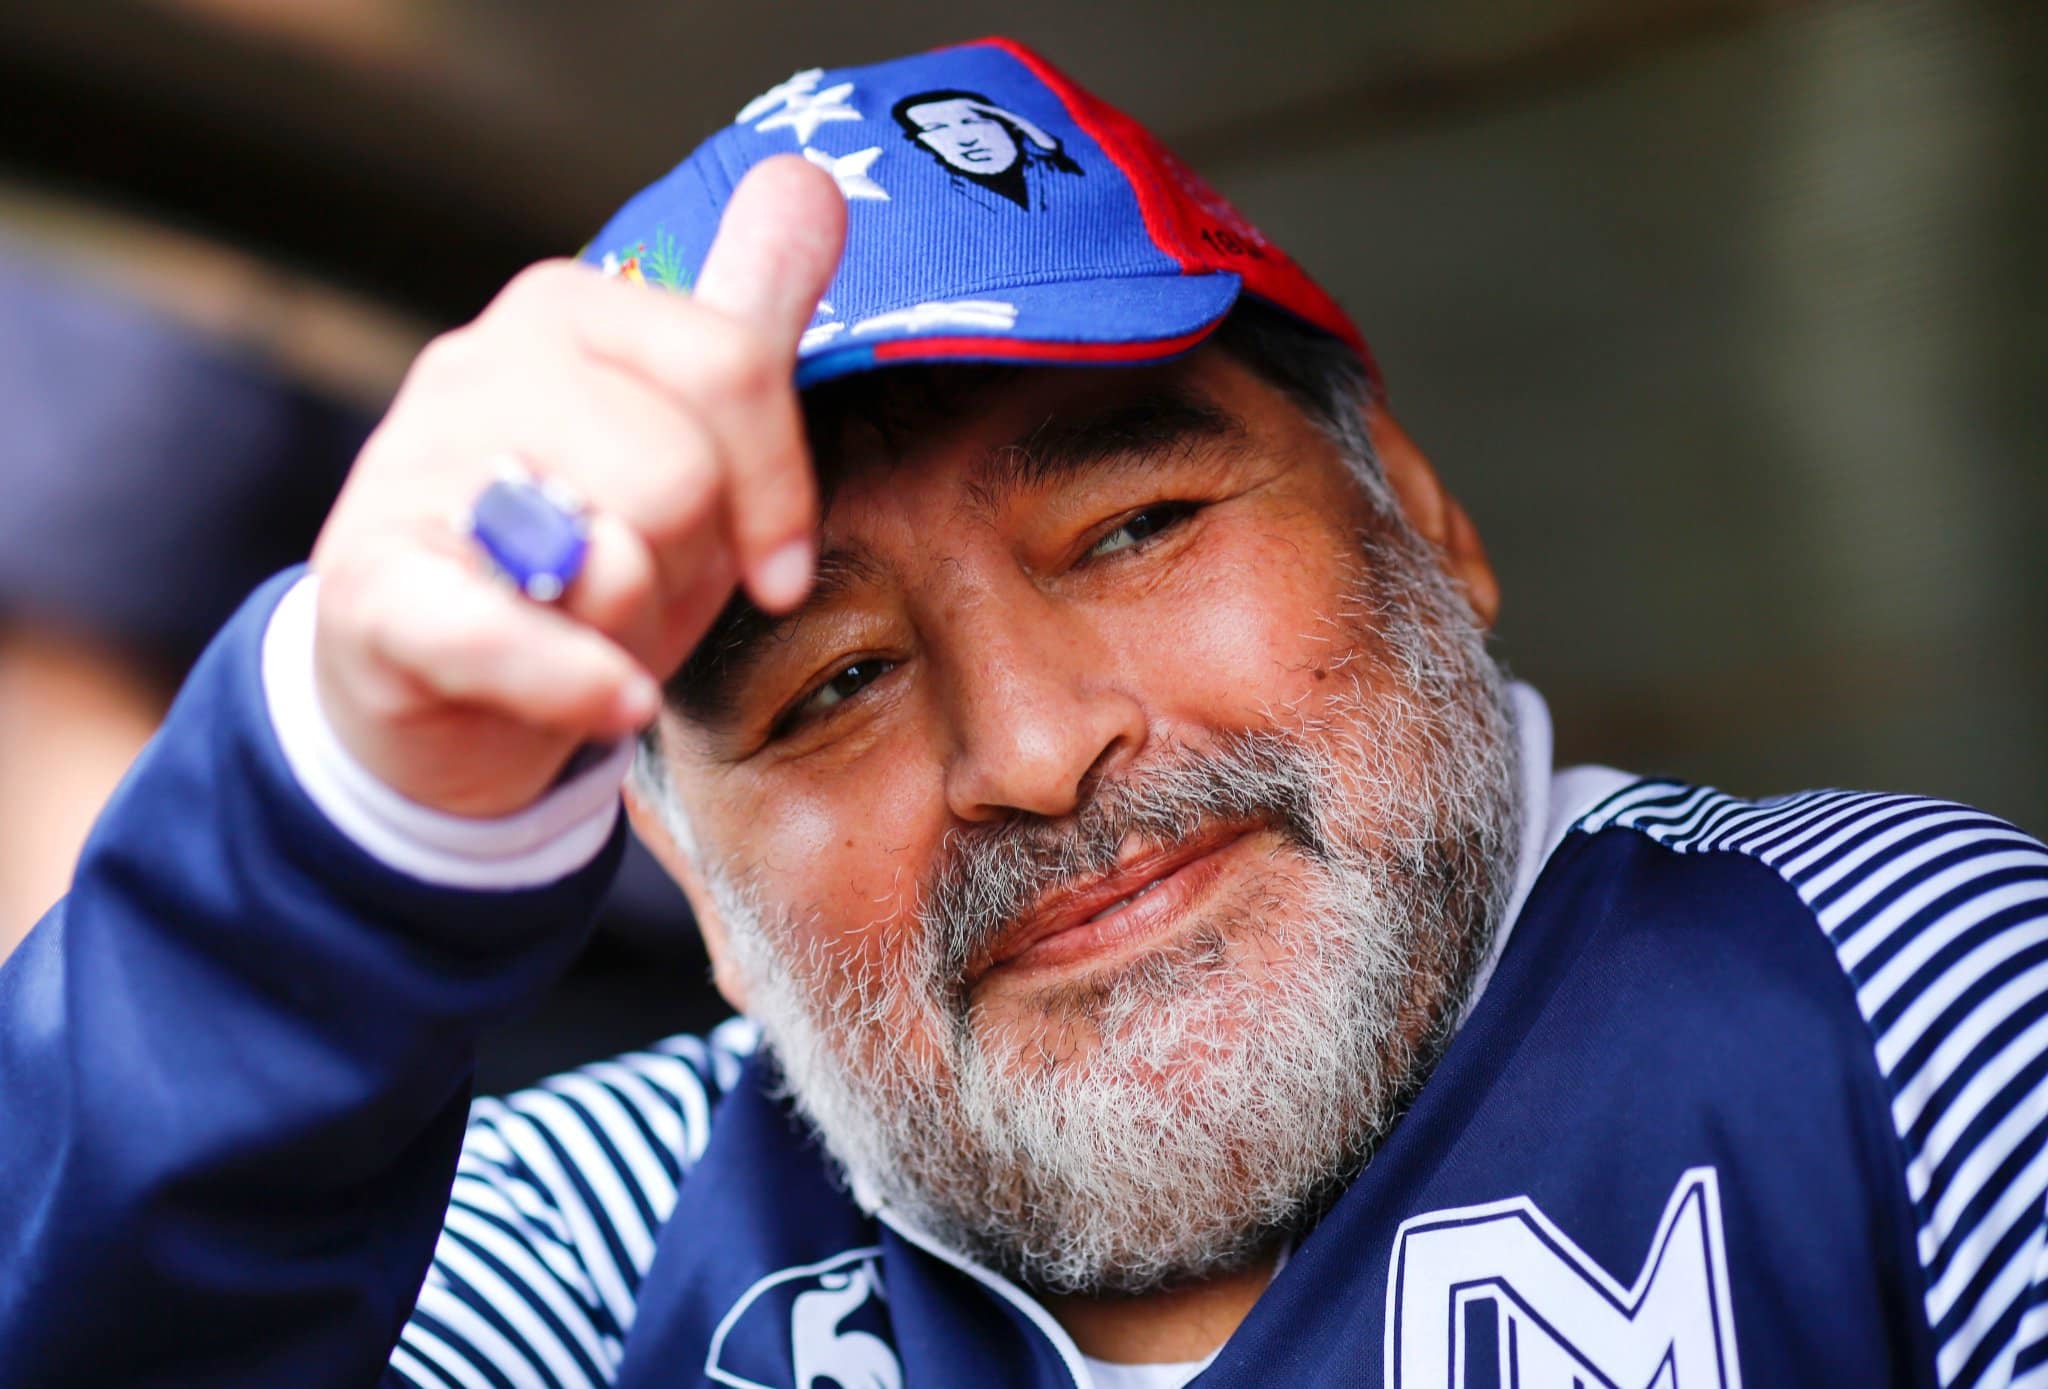 Huyền thoại Diego Maradona có thể bị đầu độc trước khi qua đời